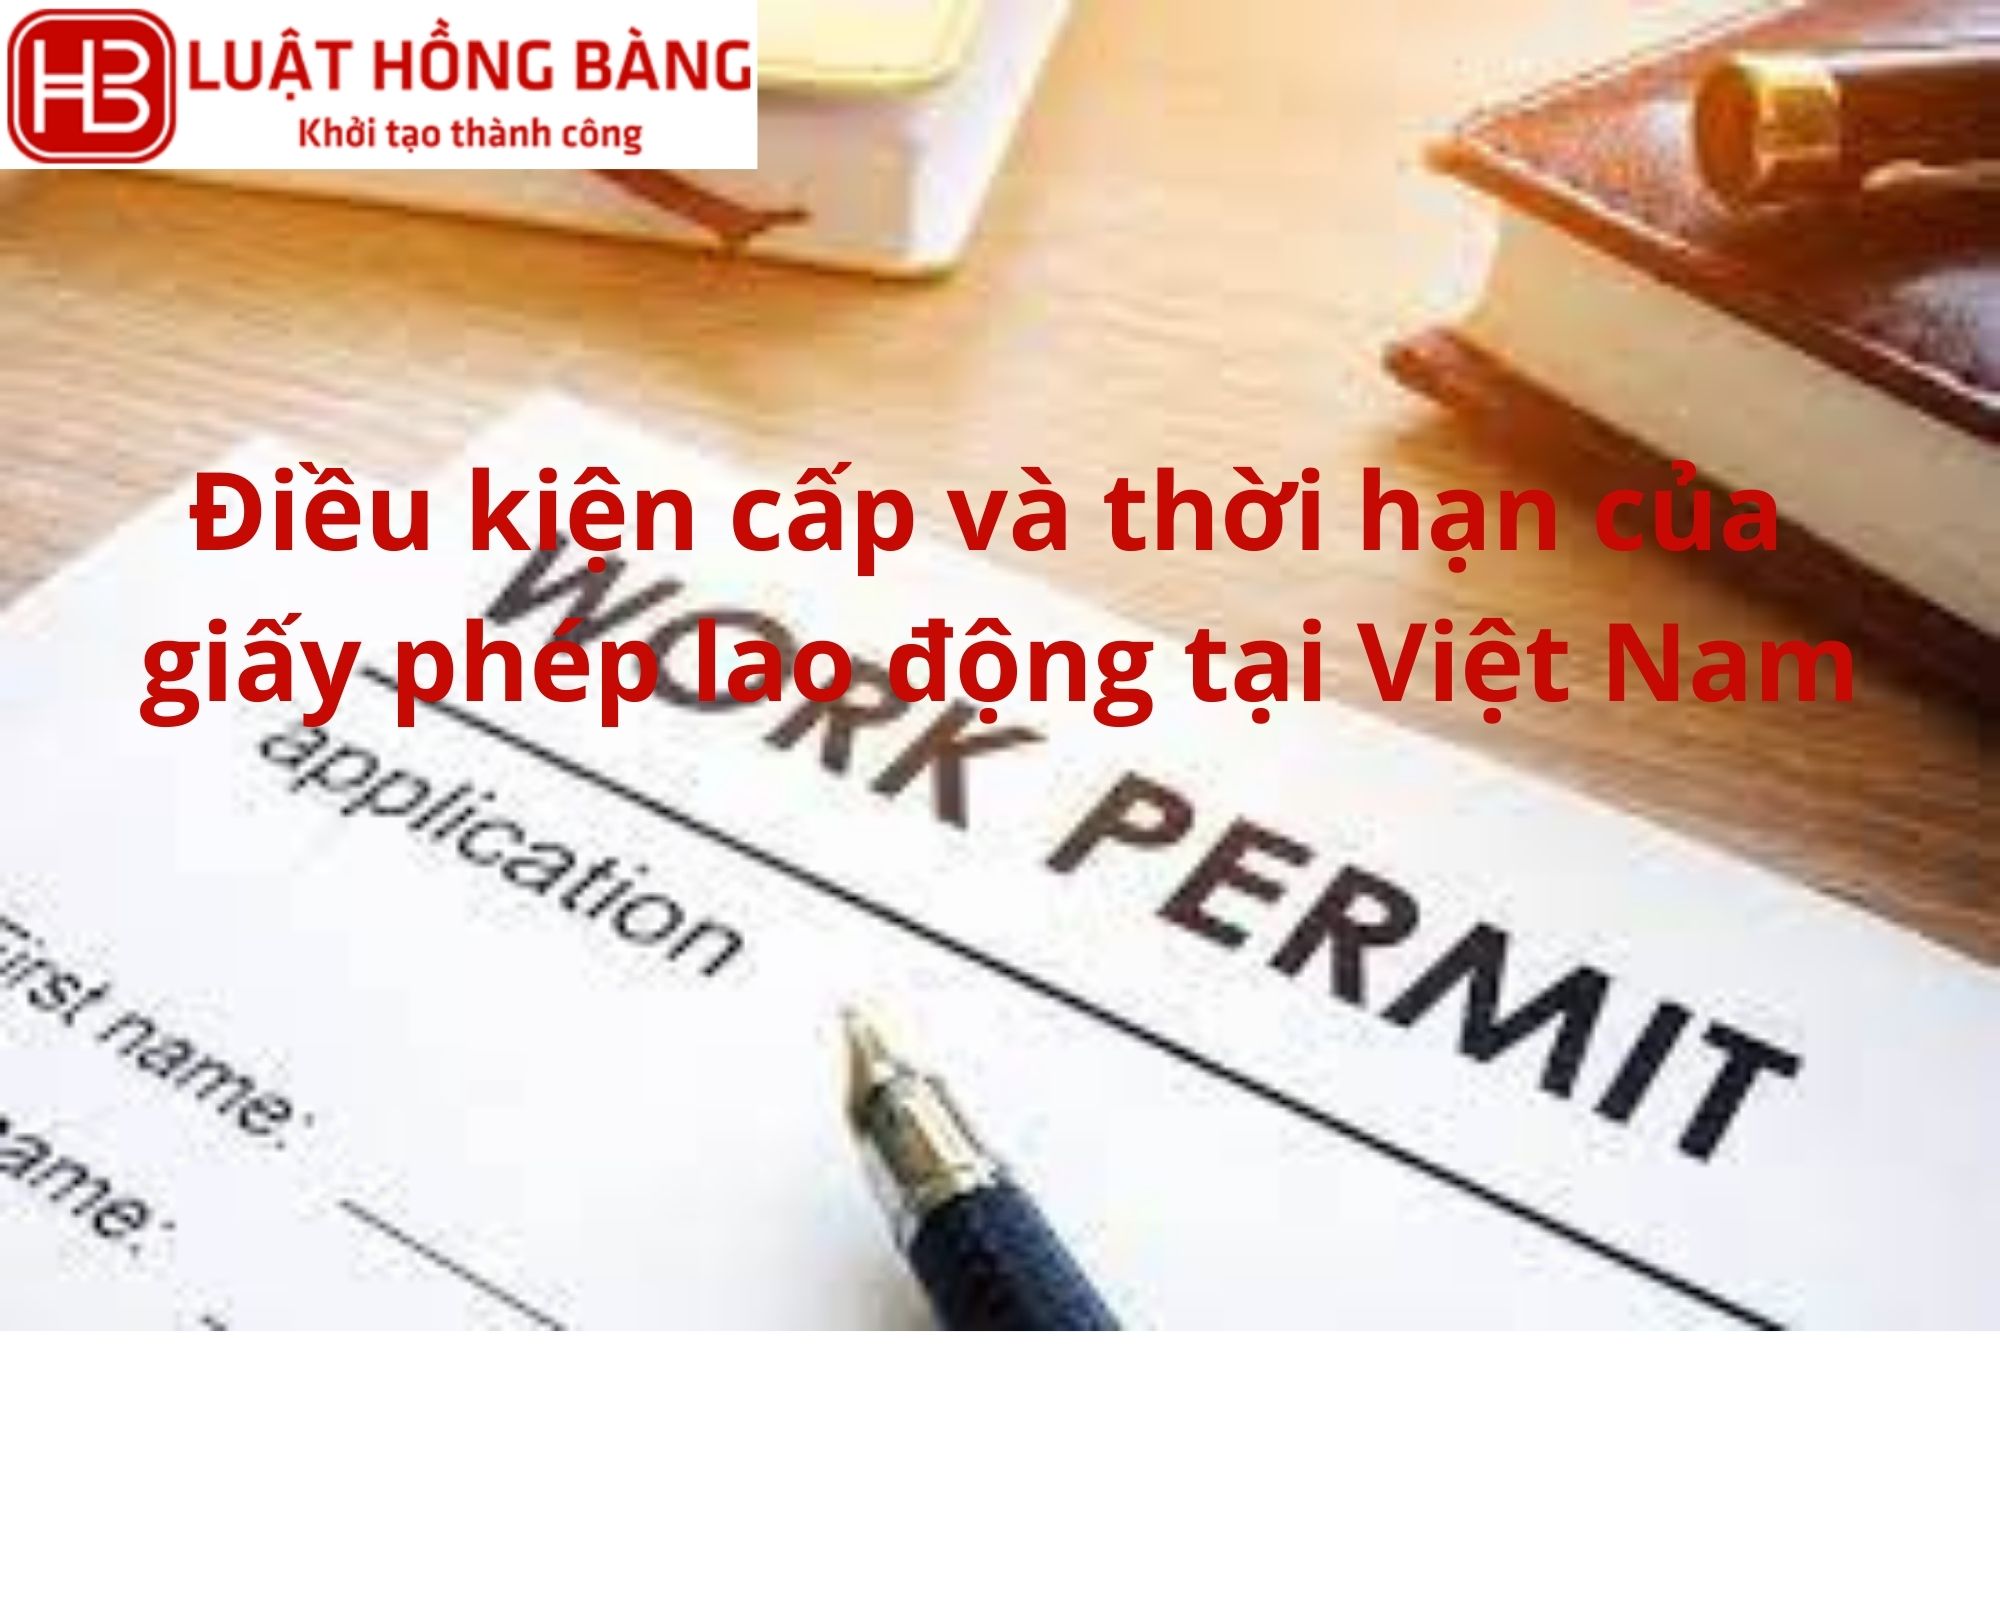 Điều kiện cấp và thời hạn của giấy phép lao động tại Việt Nam